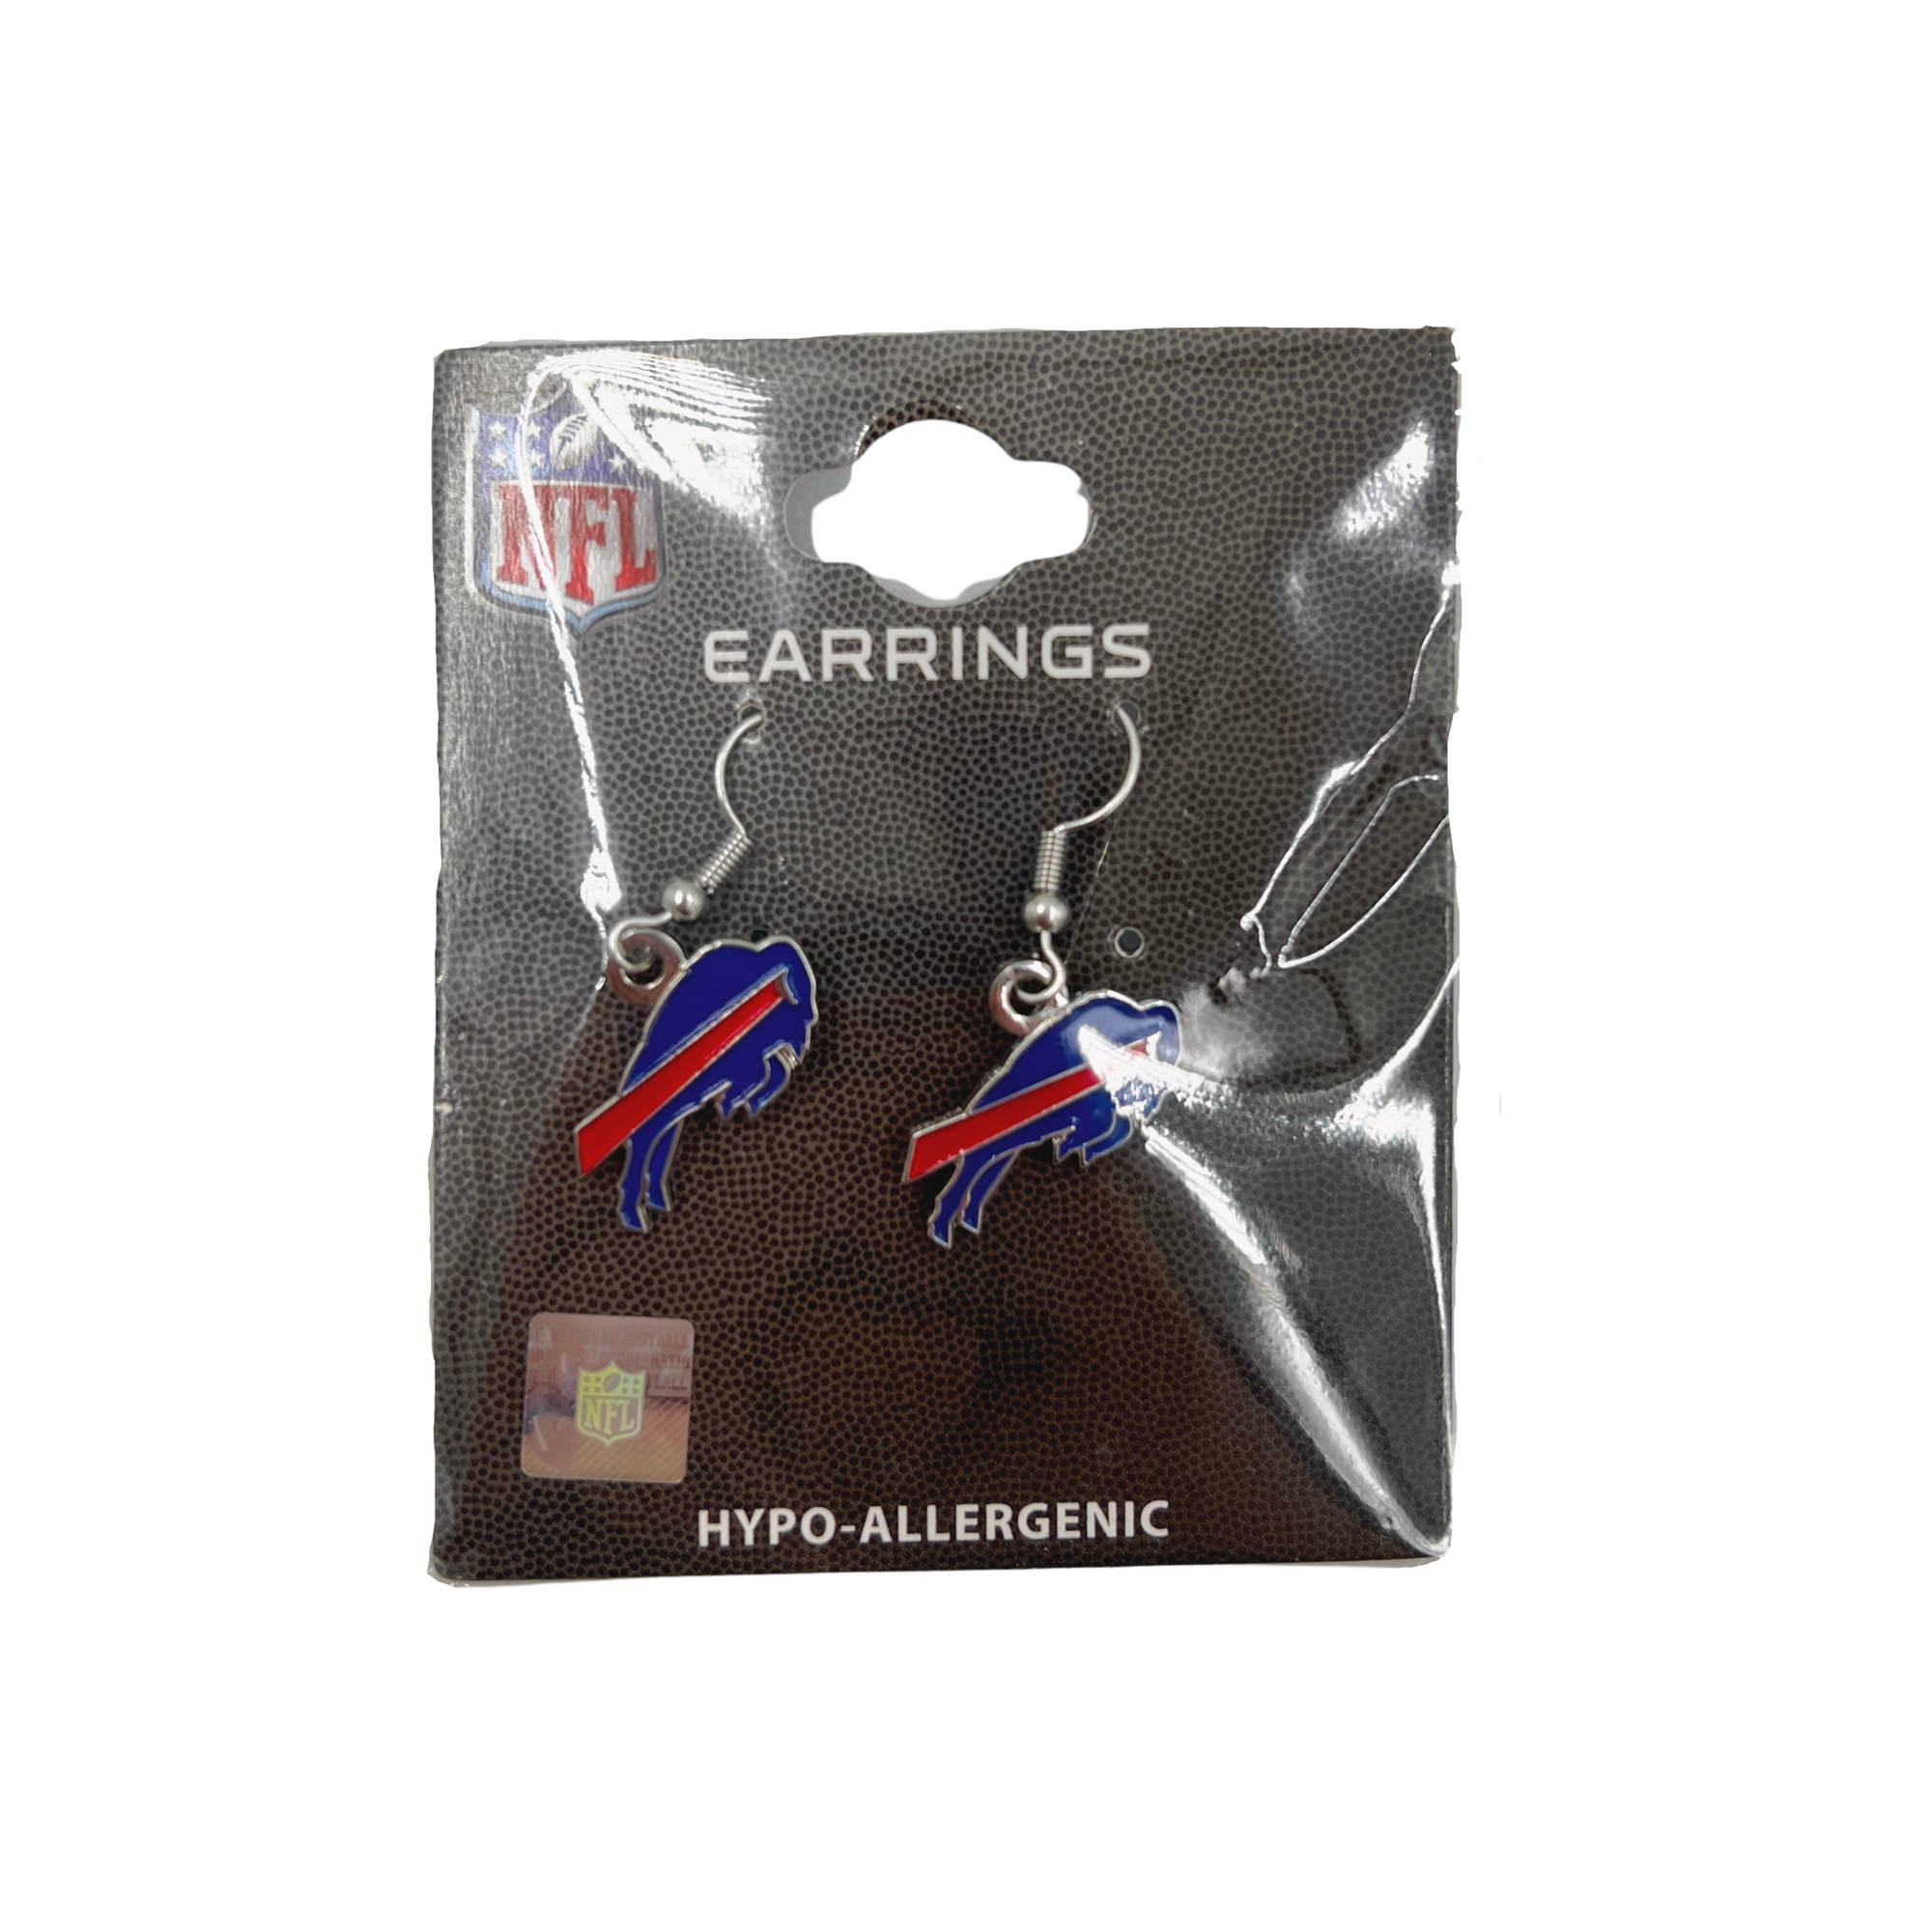 Buffalo Bills Logo Earrings